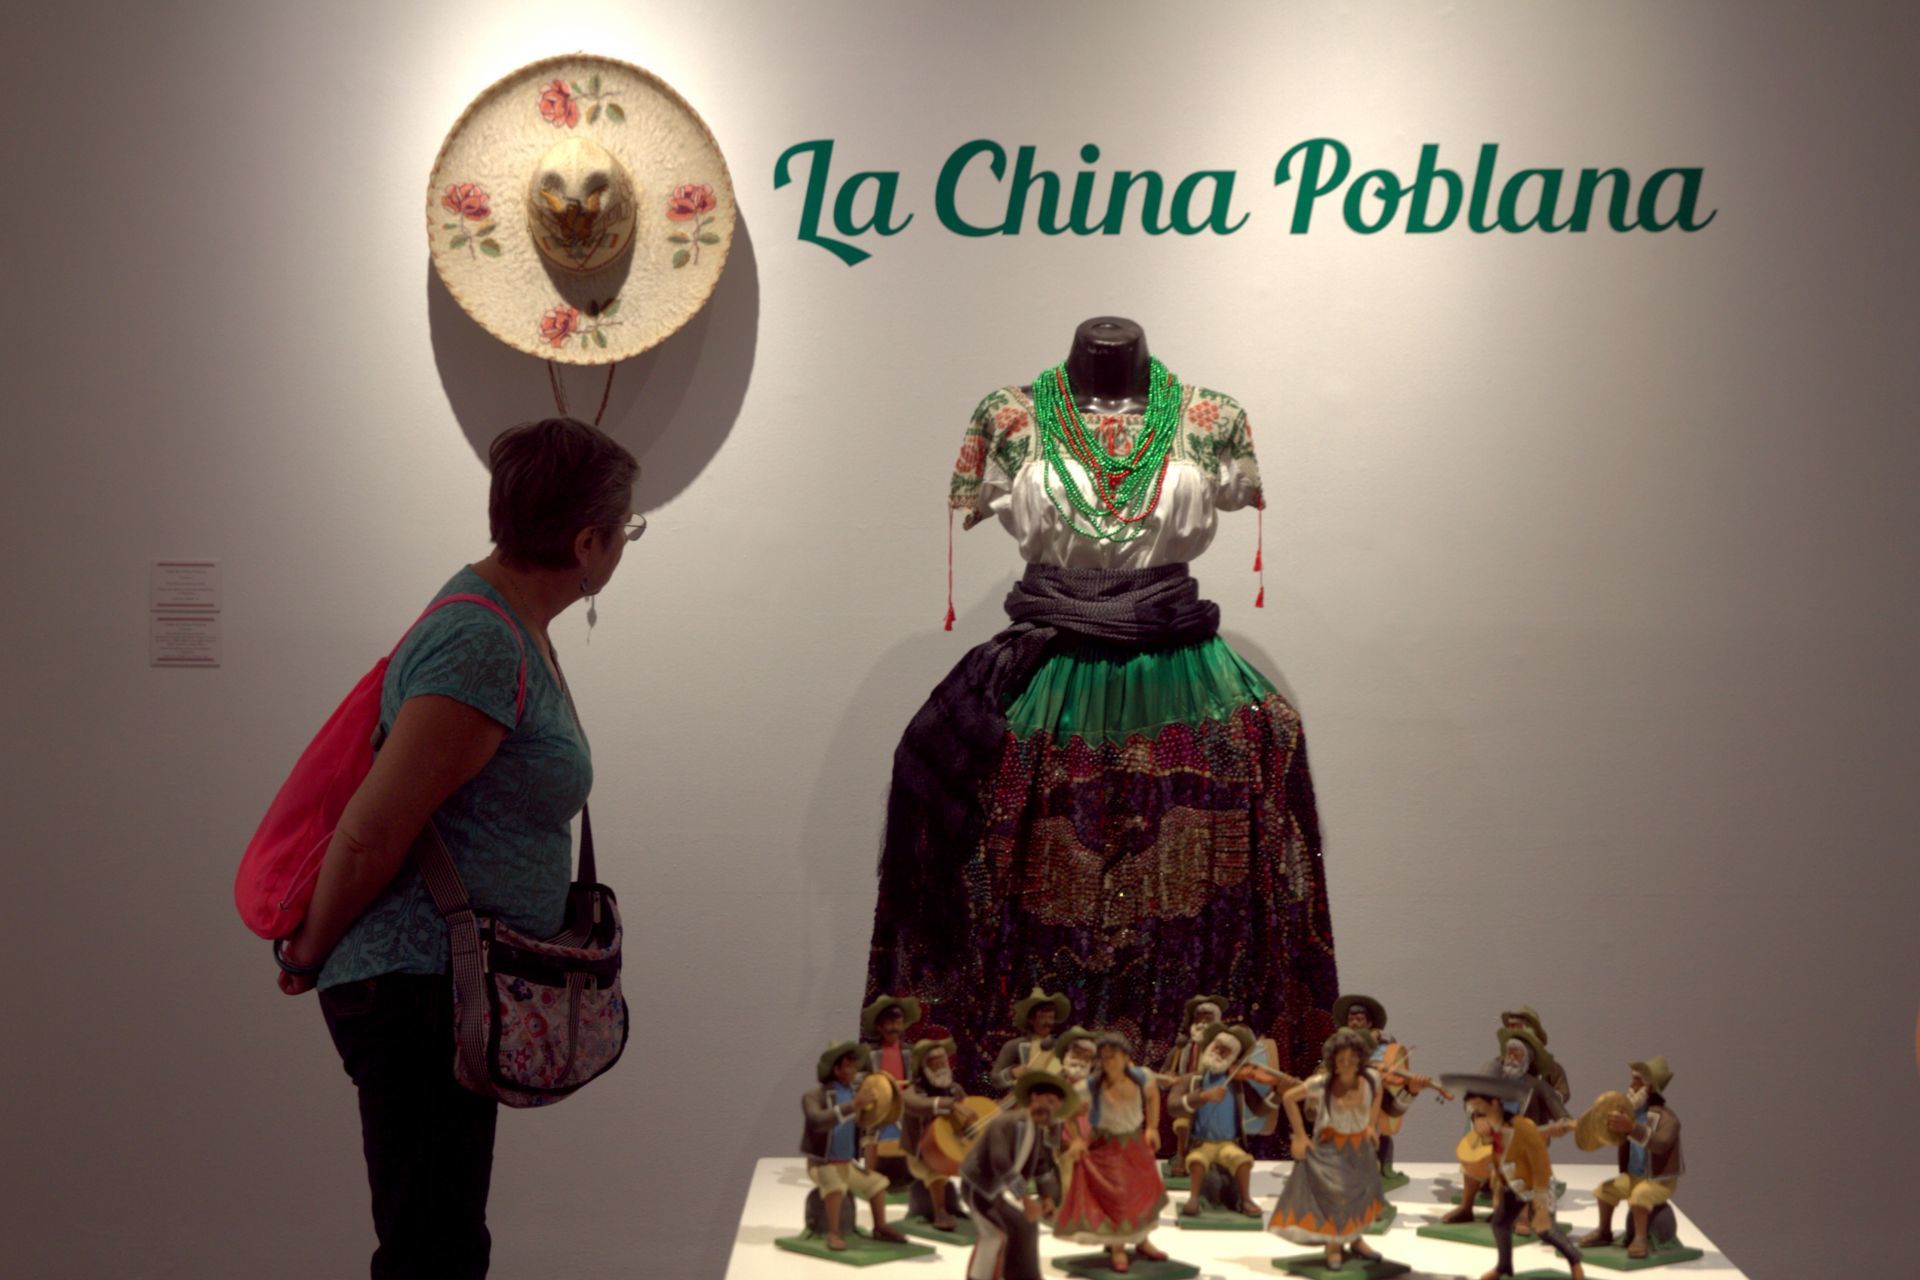 La figura de la “China Poblana’ se convirtió en un emblema de identidad nacional en México, su origen se remonta a la época colonial de la Nueva España
(Foto: Cuartoscuro)